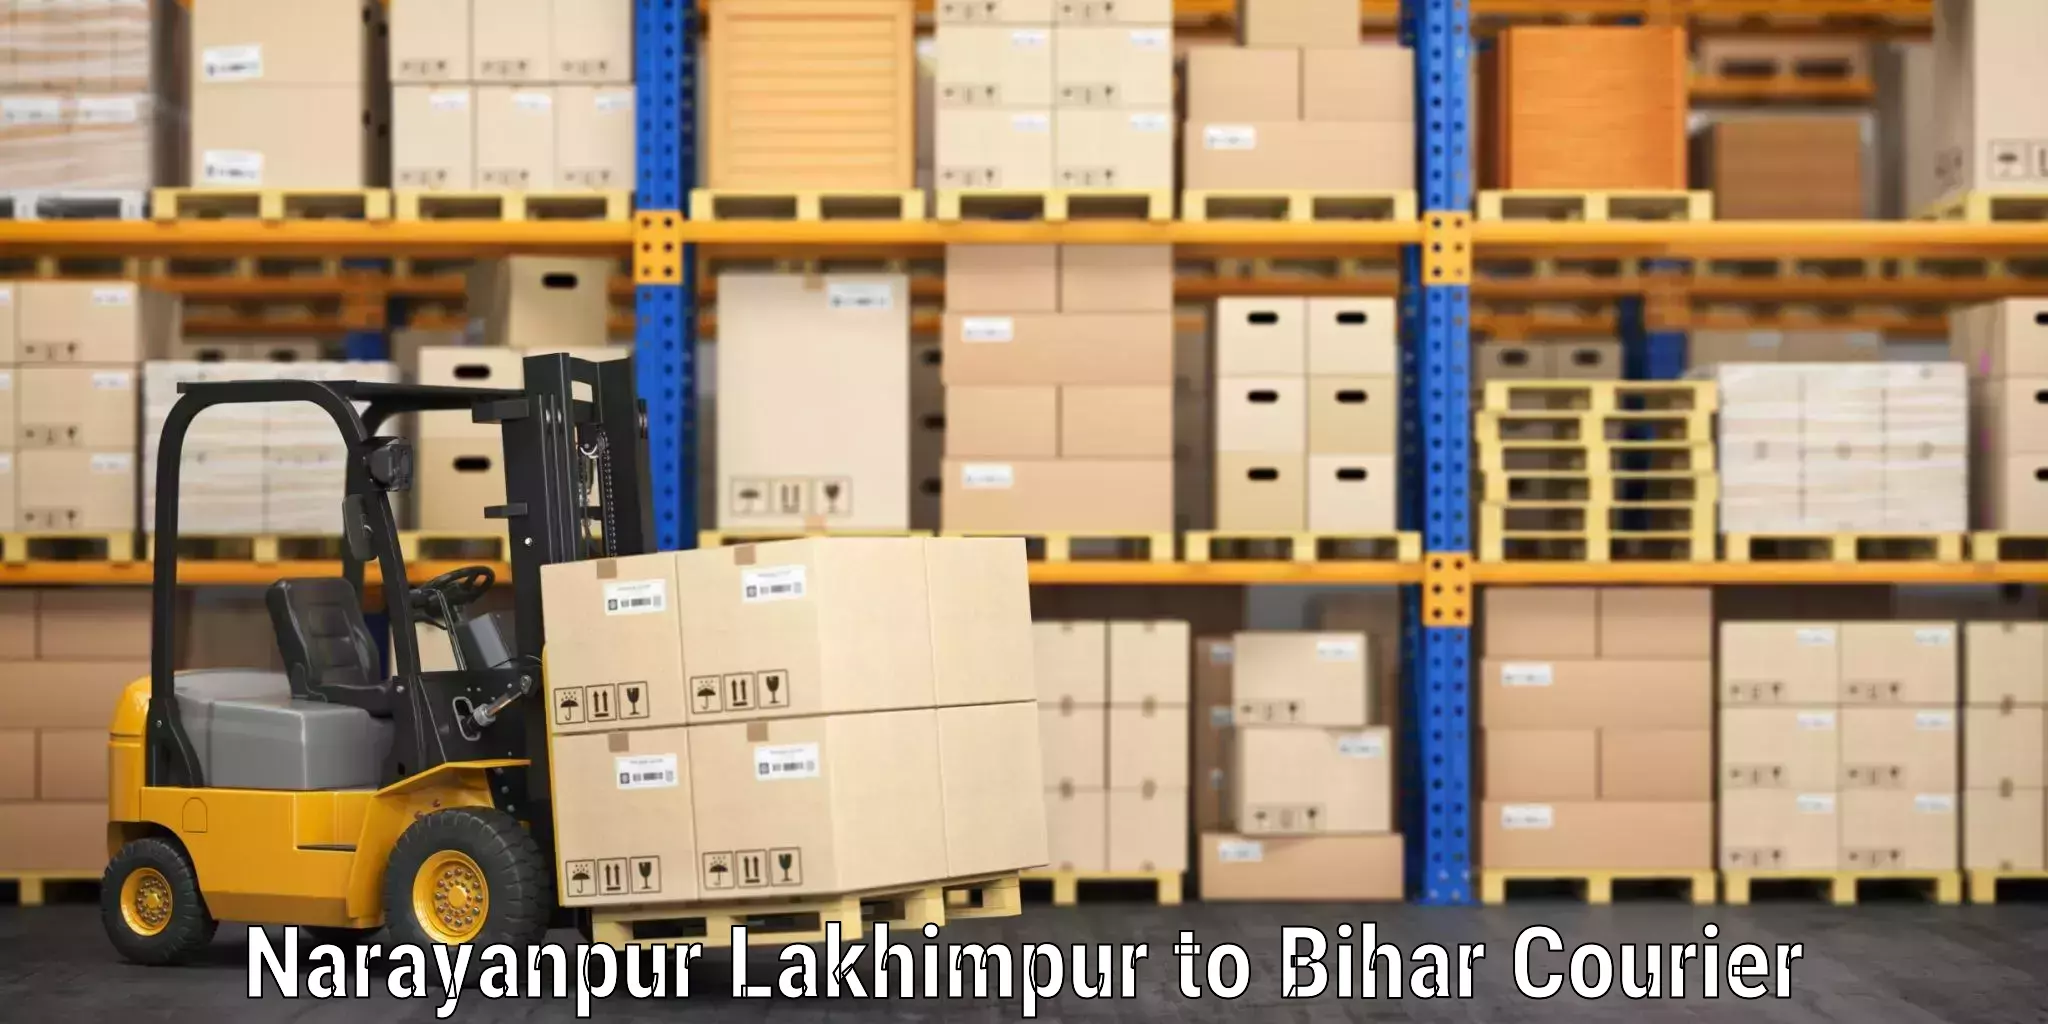 Doorstep luggage pickup Narayanpur Lakhimpur to Bihar